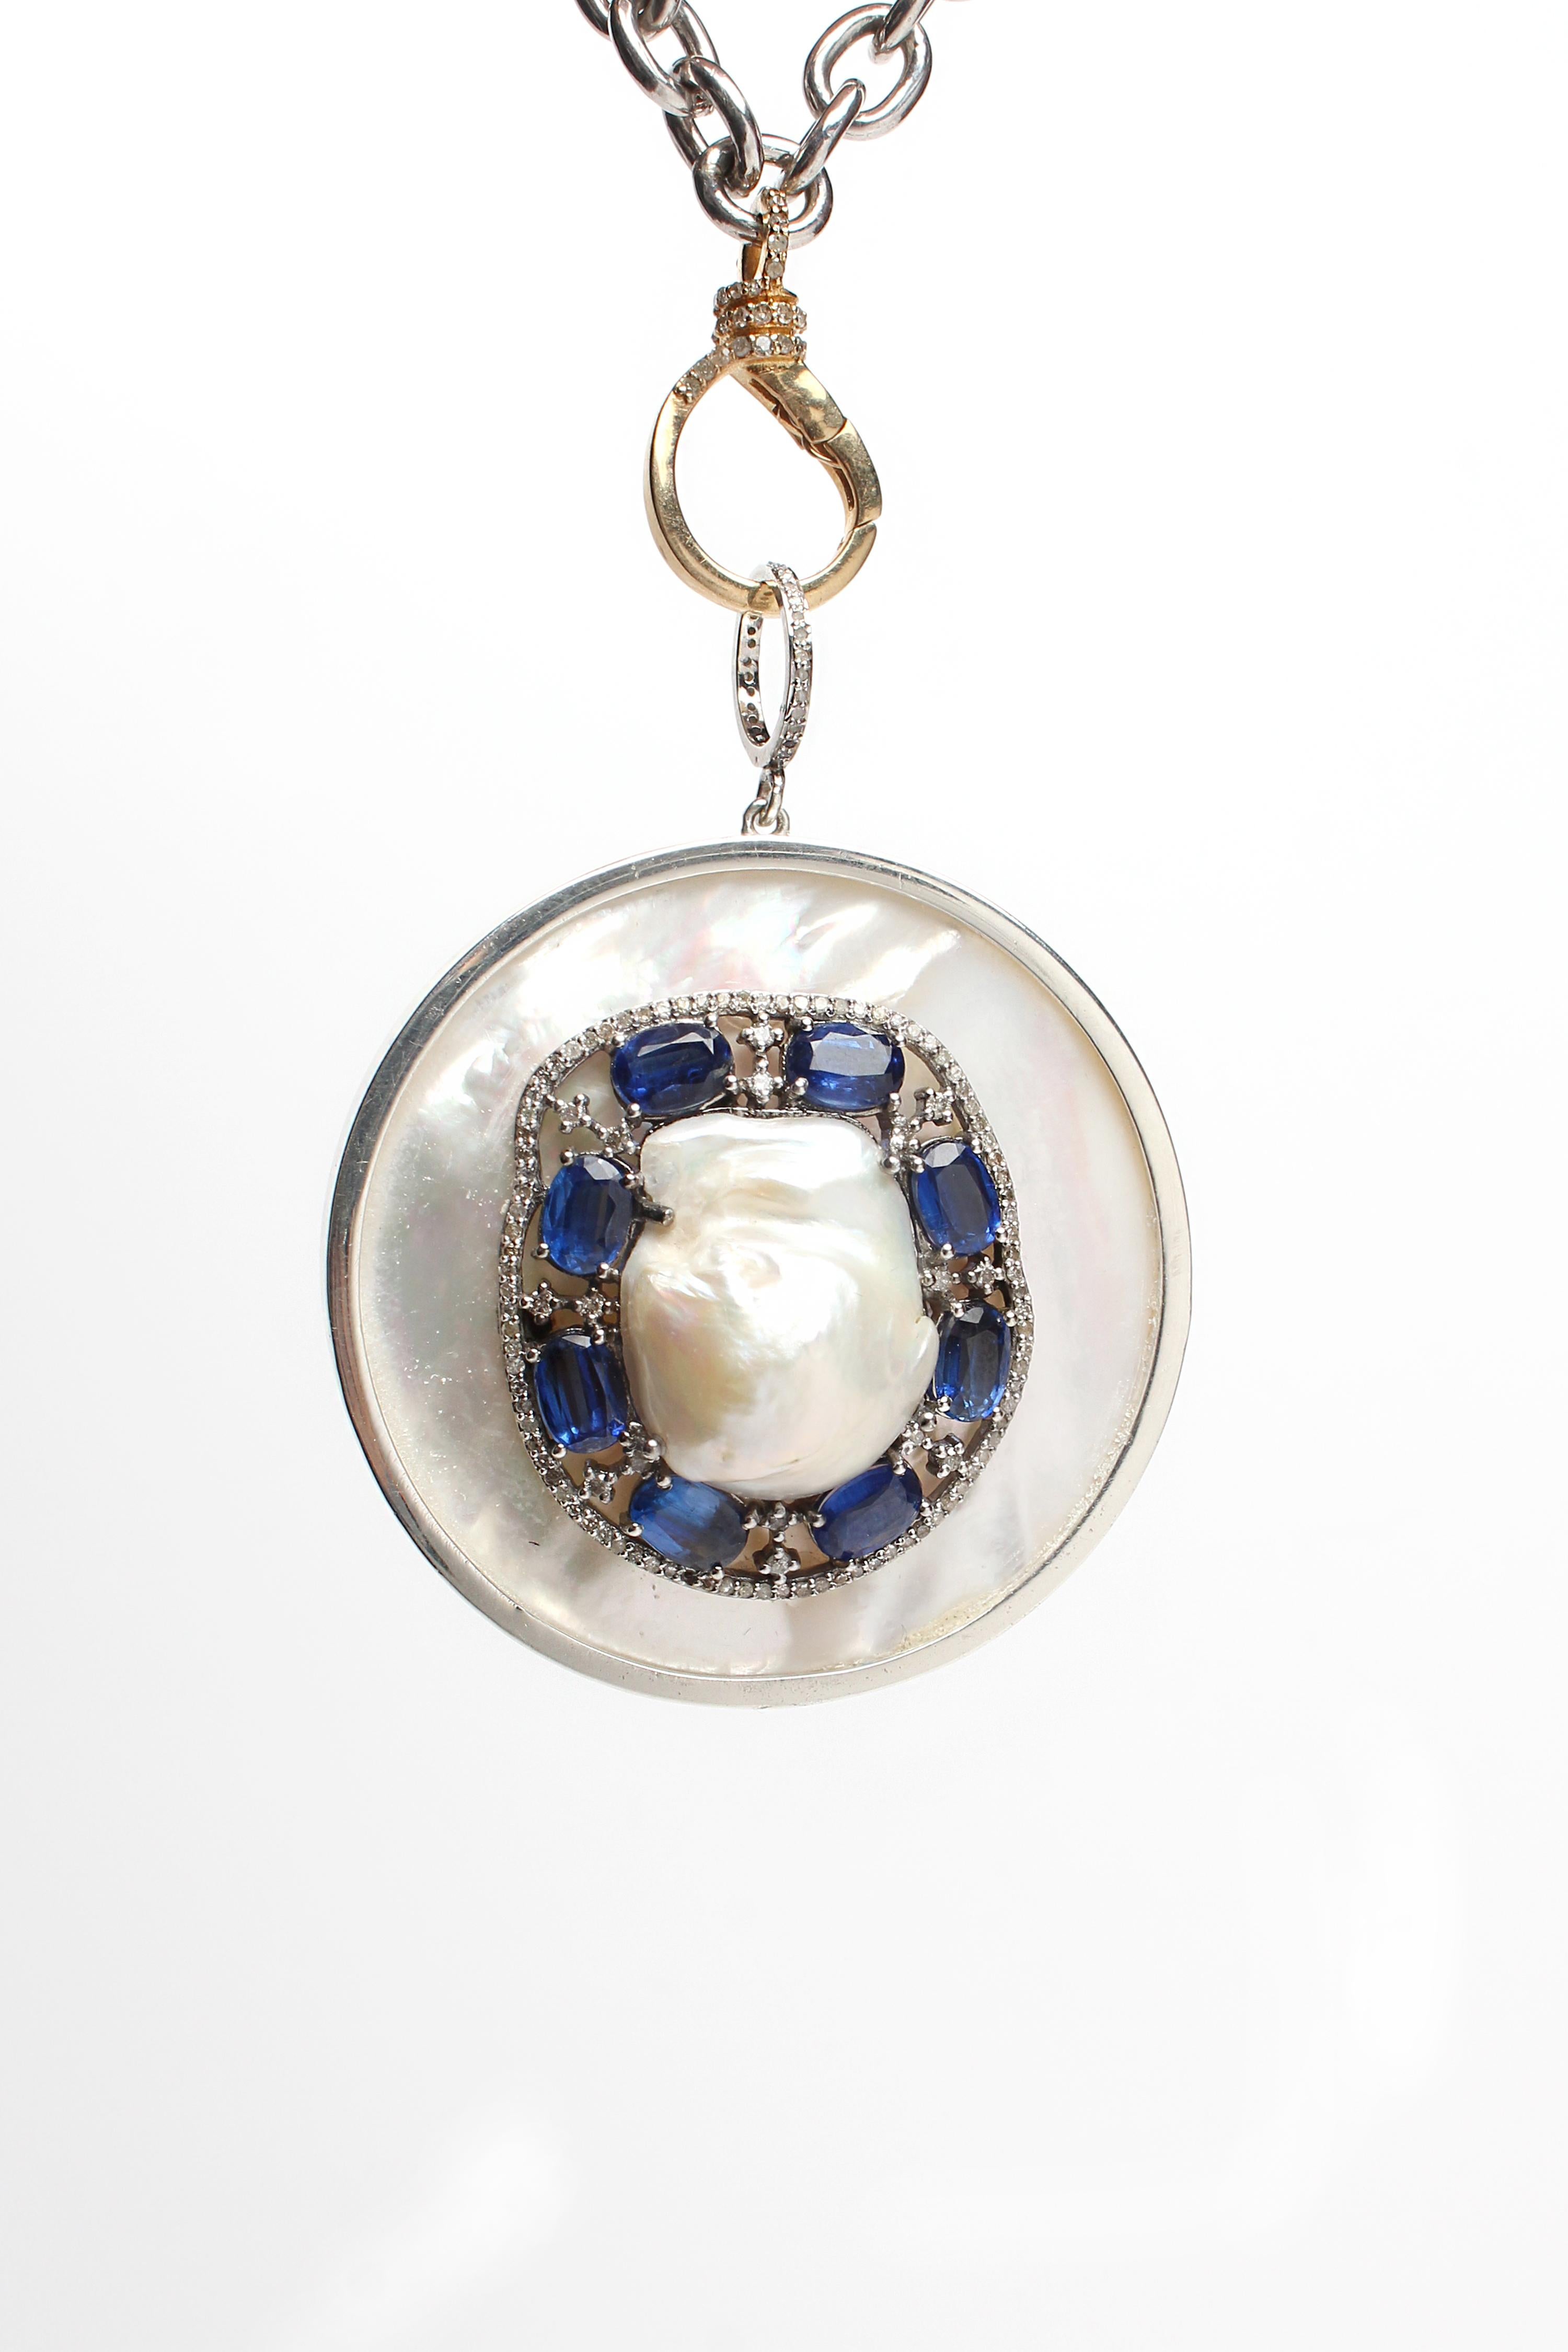 Contemporary Clarissa Bronfman Sapphire Diamond Pearl Silver Pendant on Gold Silver Chain 18